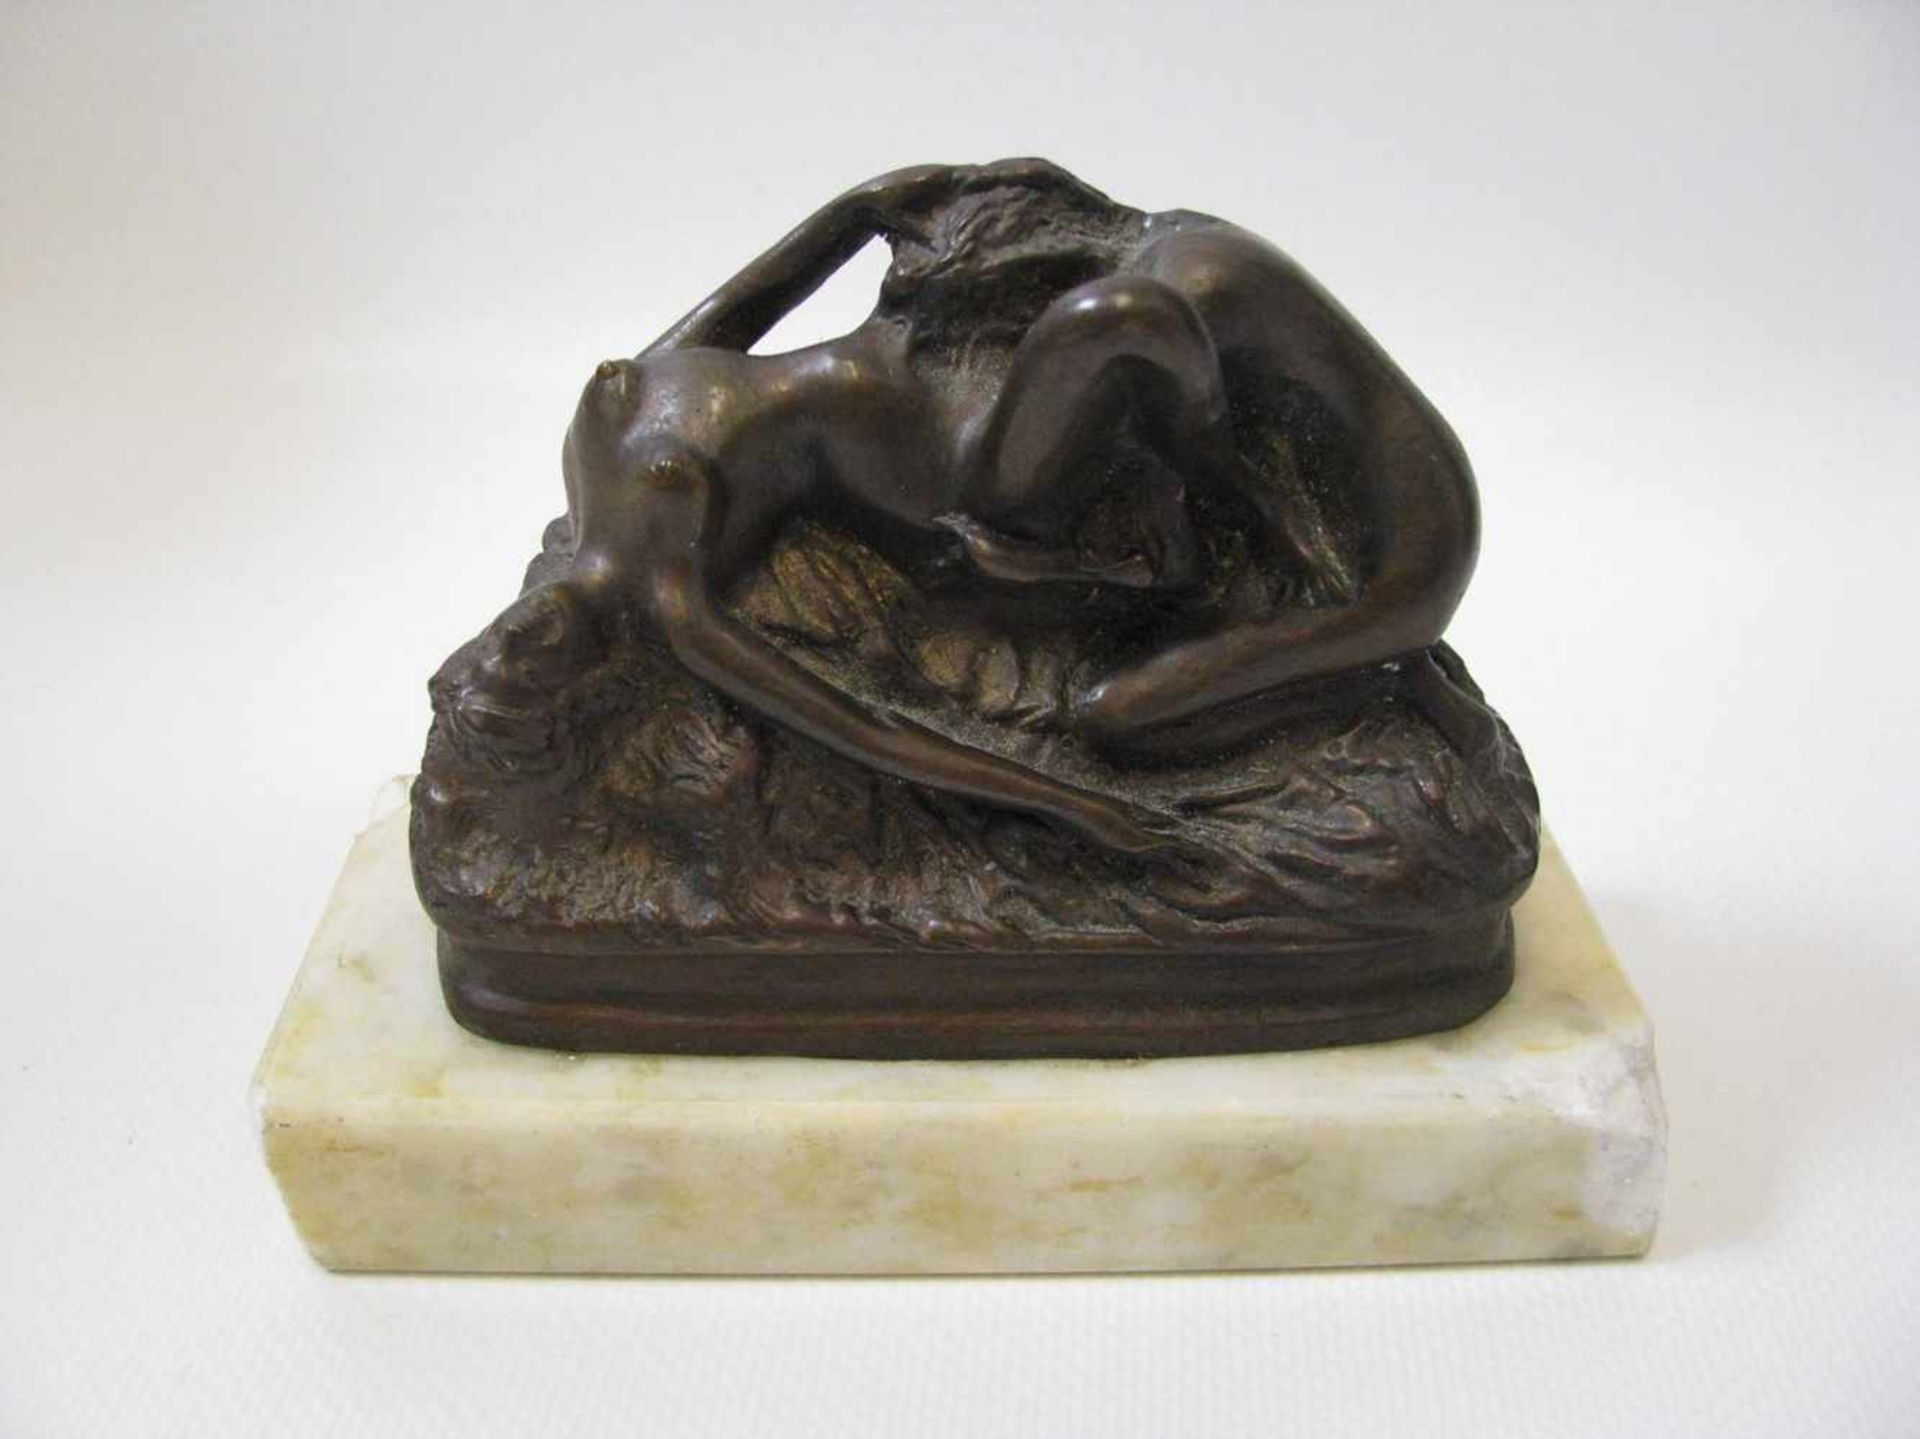 Erotische Bronze, Zwei Frauen, Bronze auf Marmorsockel (best.), 8 x 10,5 x 4,5 cm. - - -19.00 %